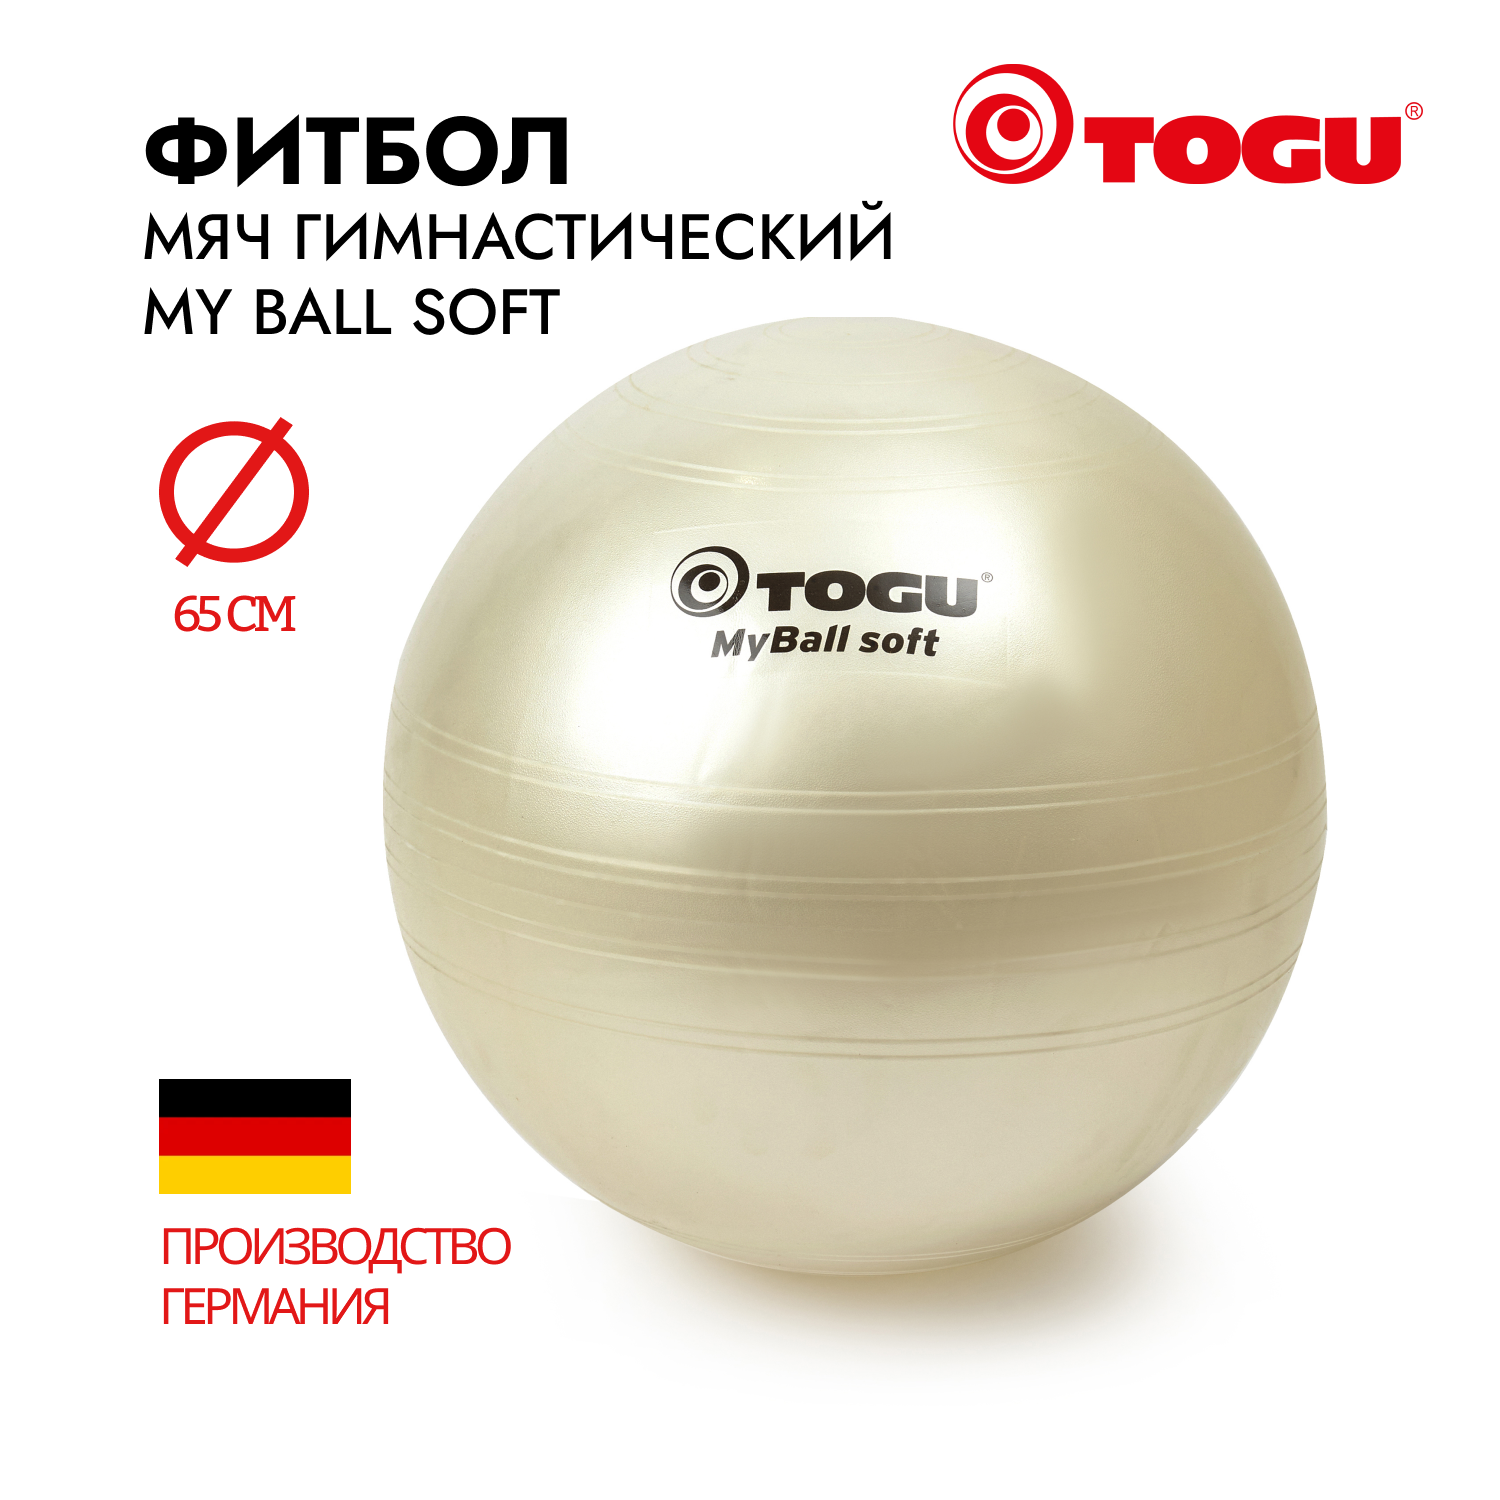 Мяч надувной спортивный / Фитбол гимнастический TOGU My Ball Soft, диаметр 65 см., белый перламутр